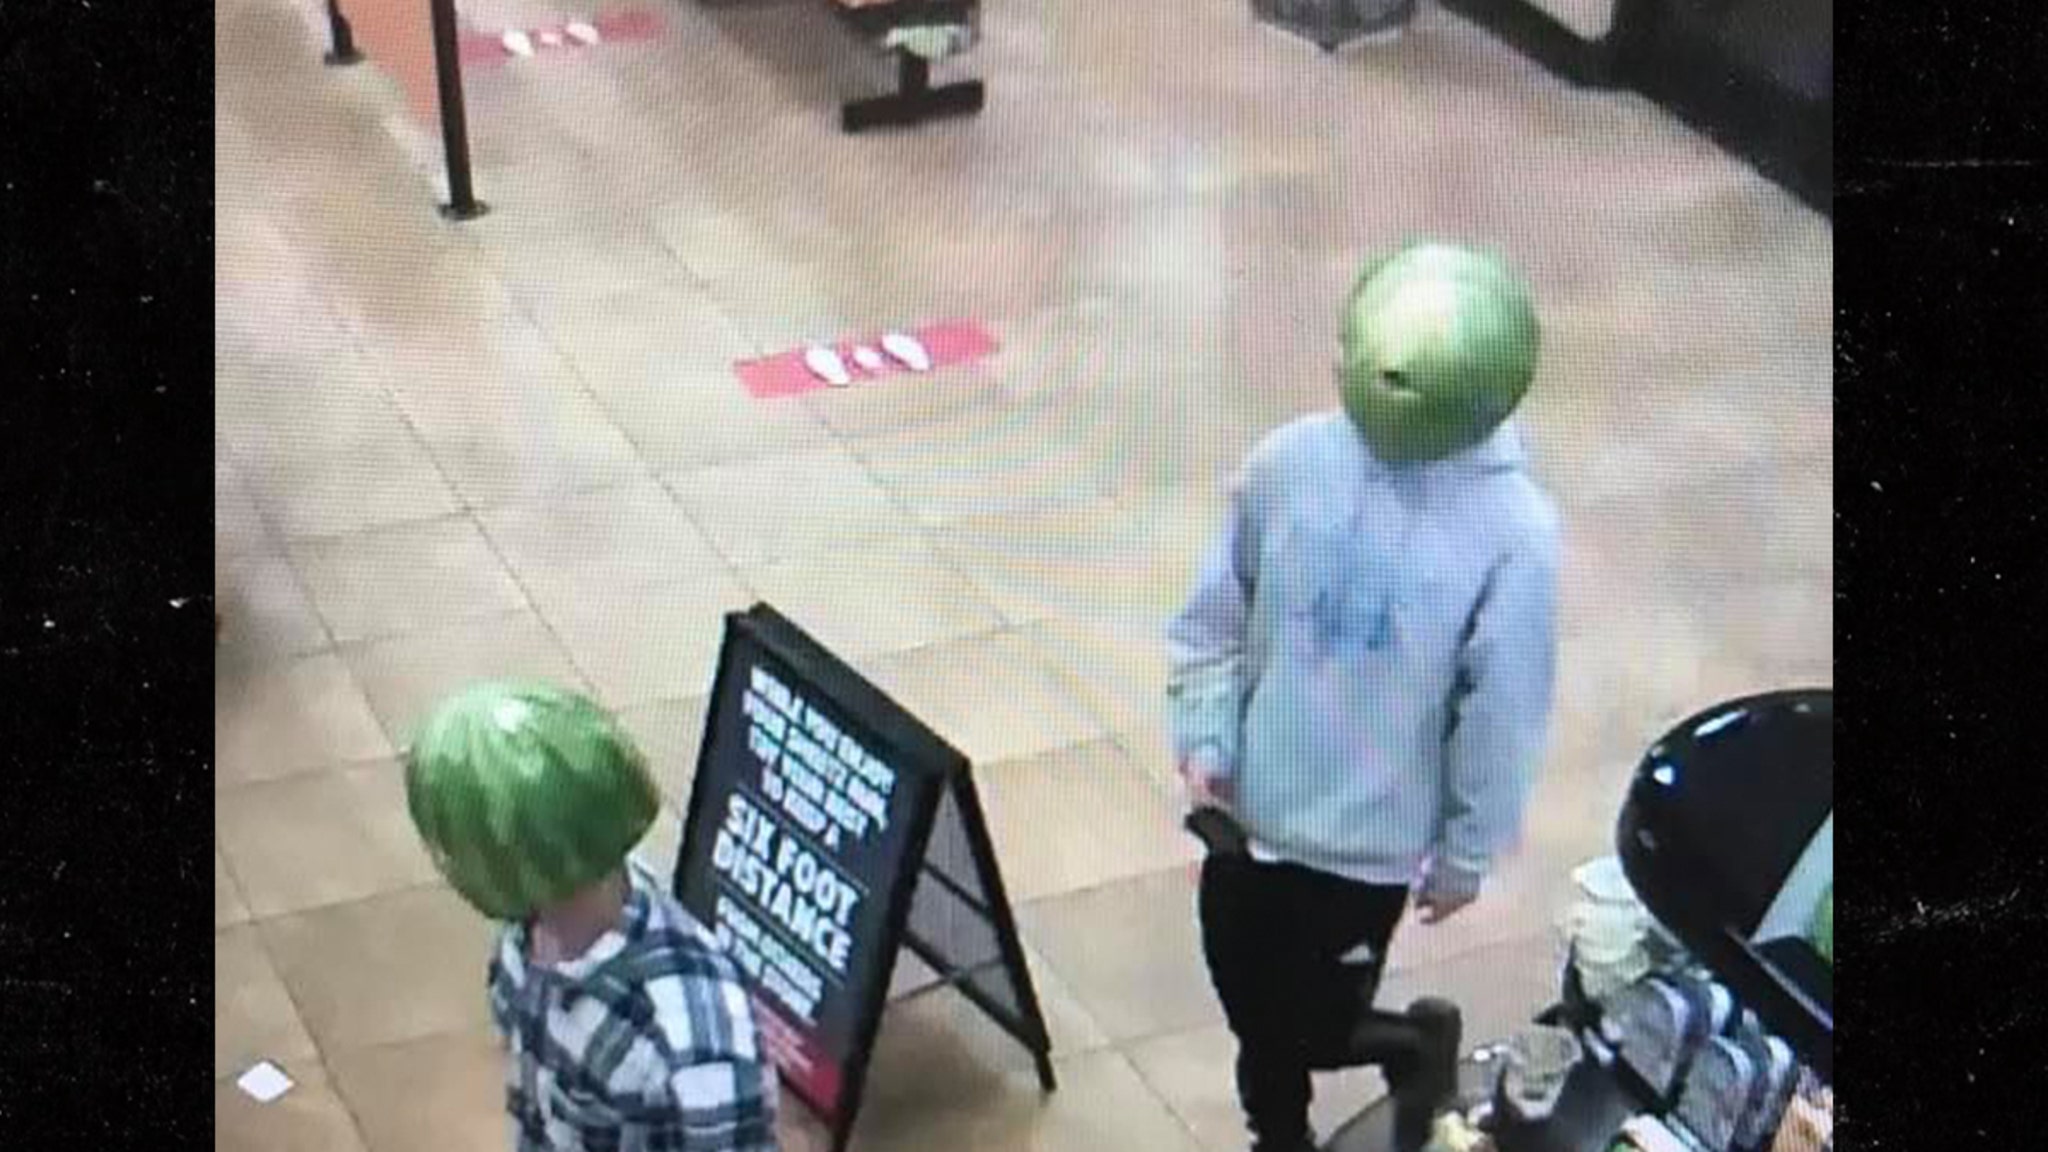 Shoplifters Wear Hollowed-Out Watermelon Masks, Cops Make Arrest